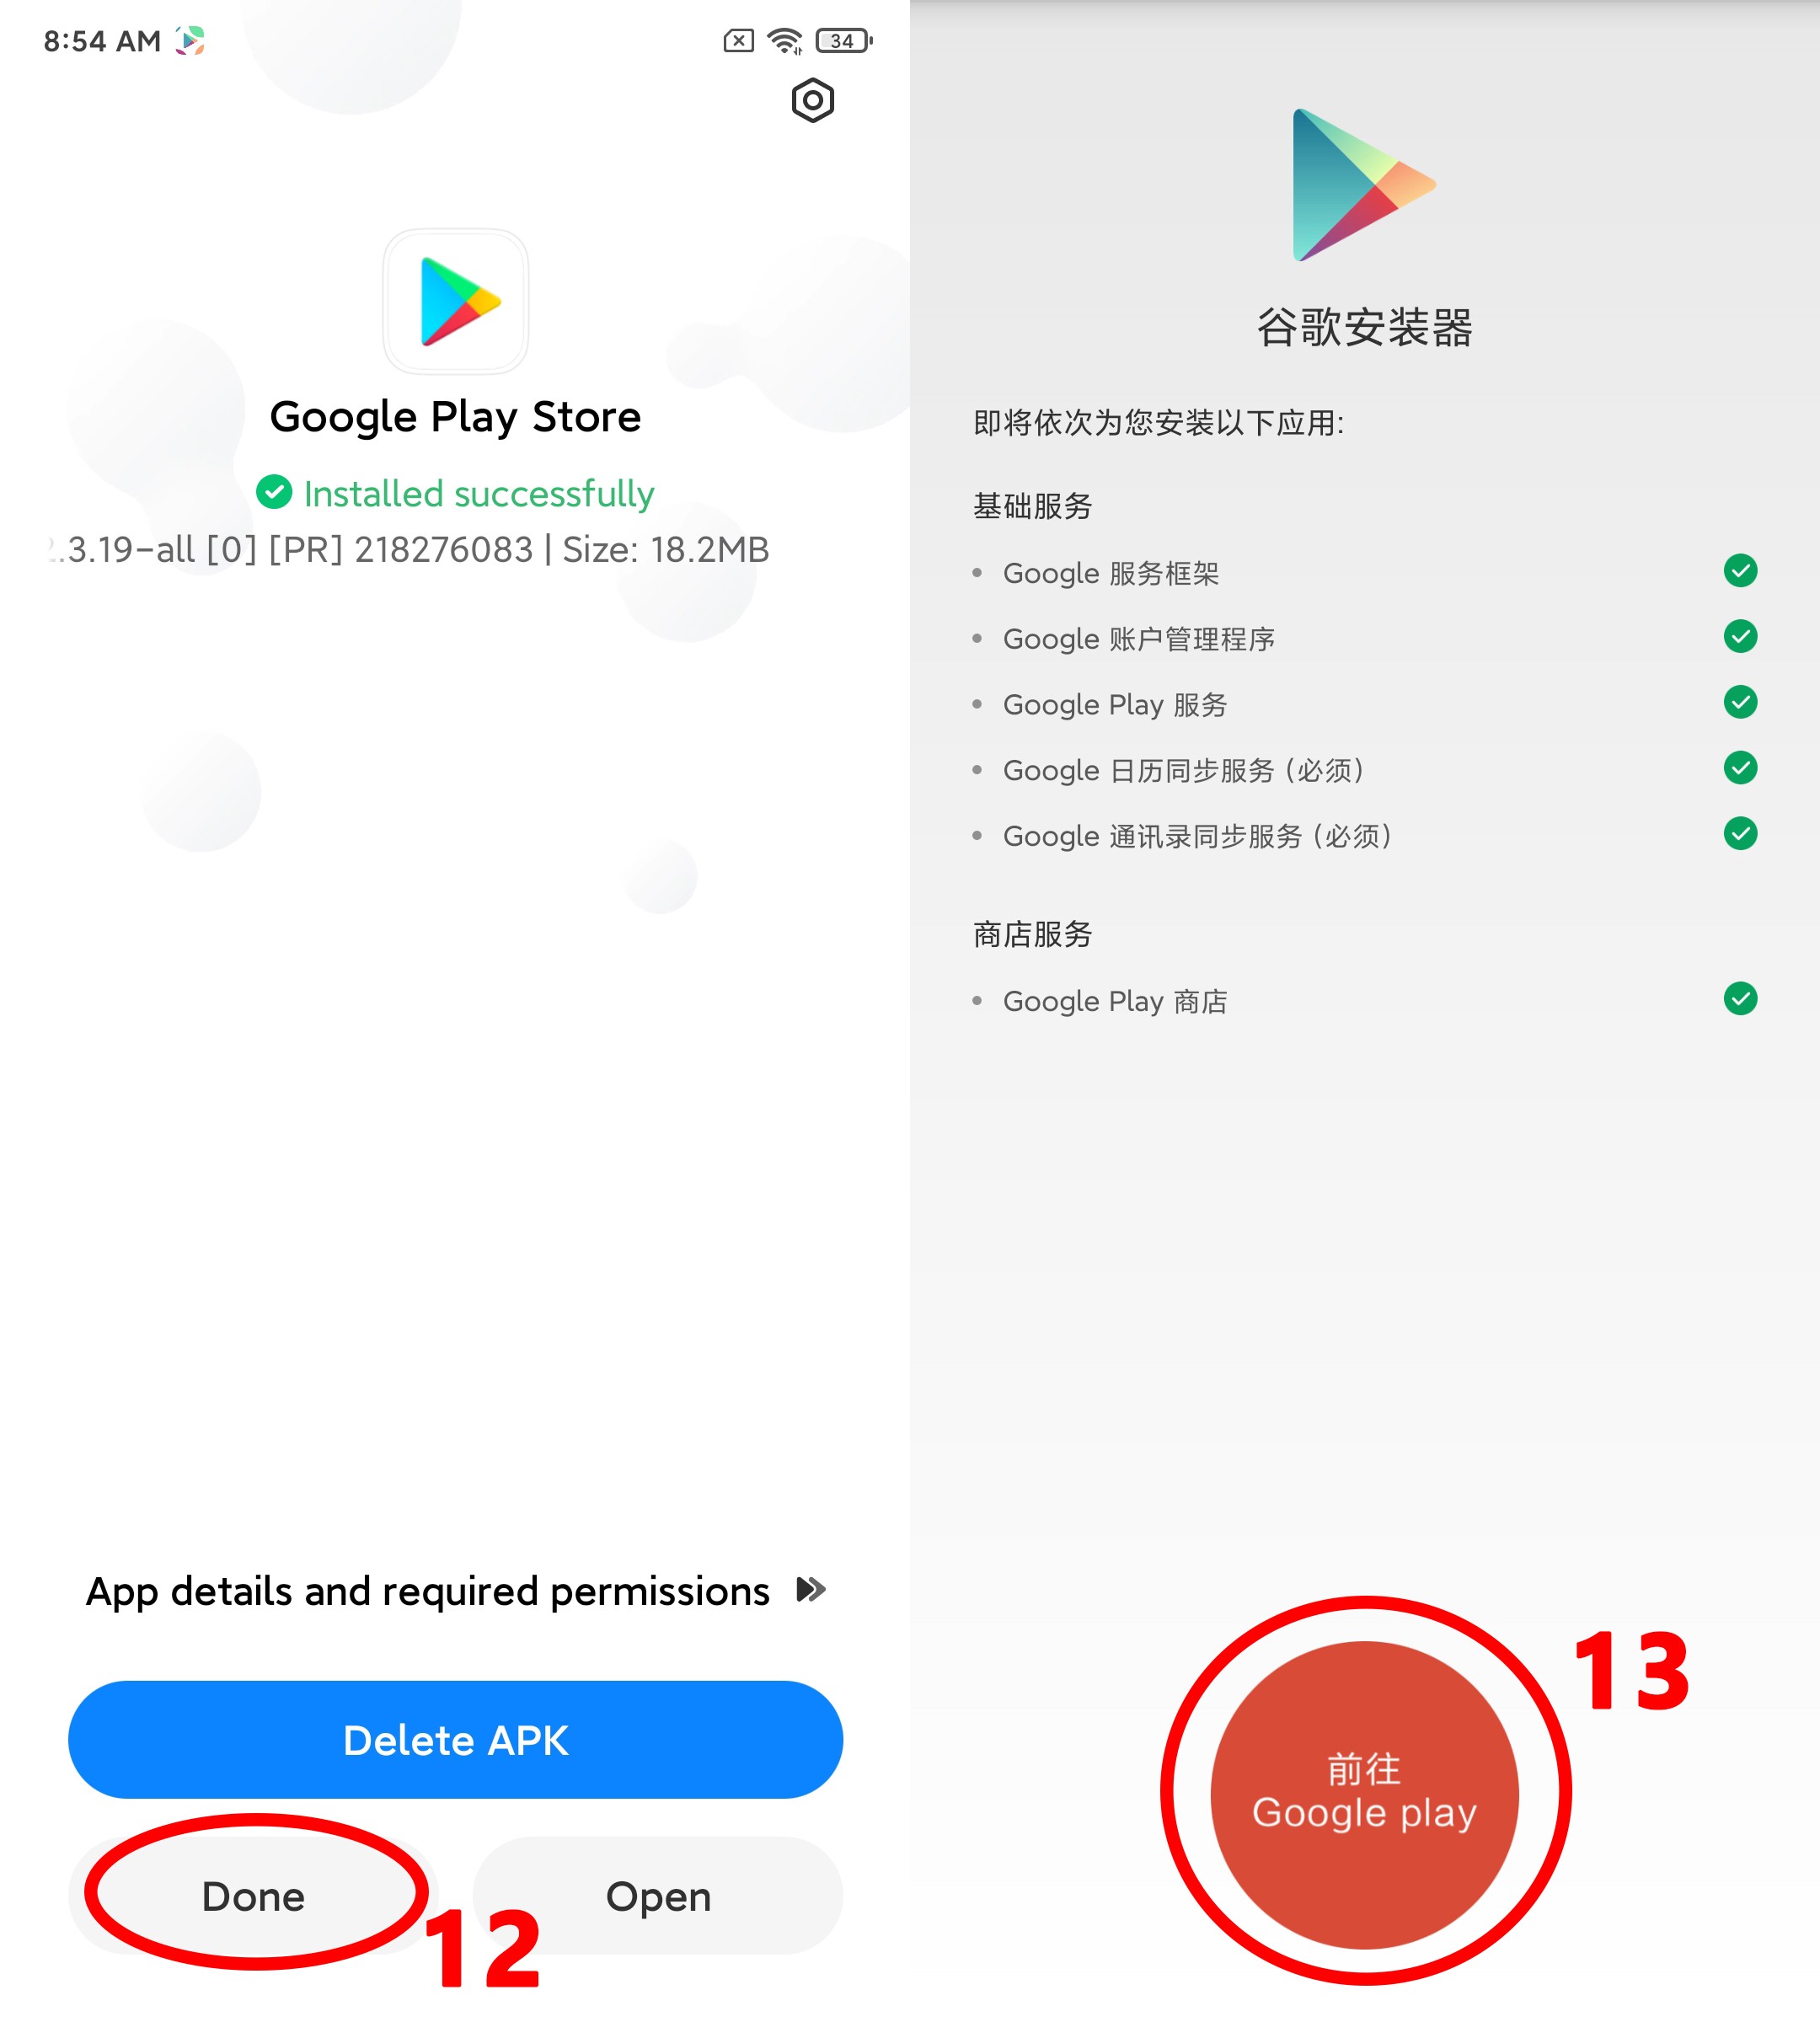 Chọn nút màu đỏ có chữ "Google Play" để mở ứng dụng CH Play